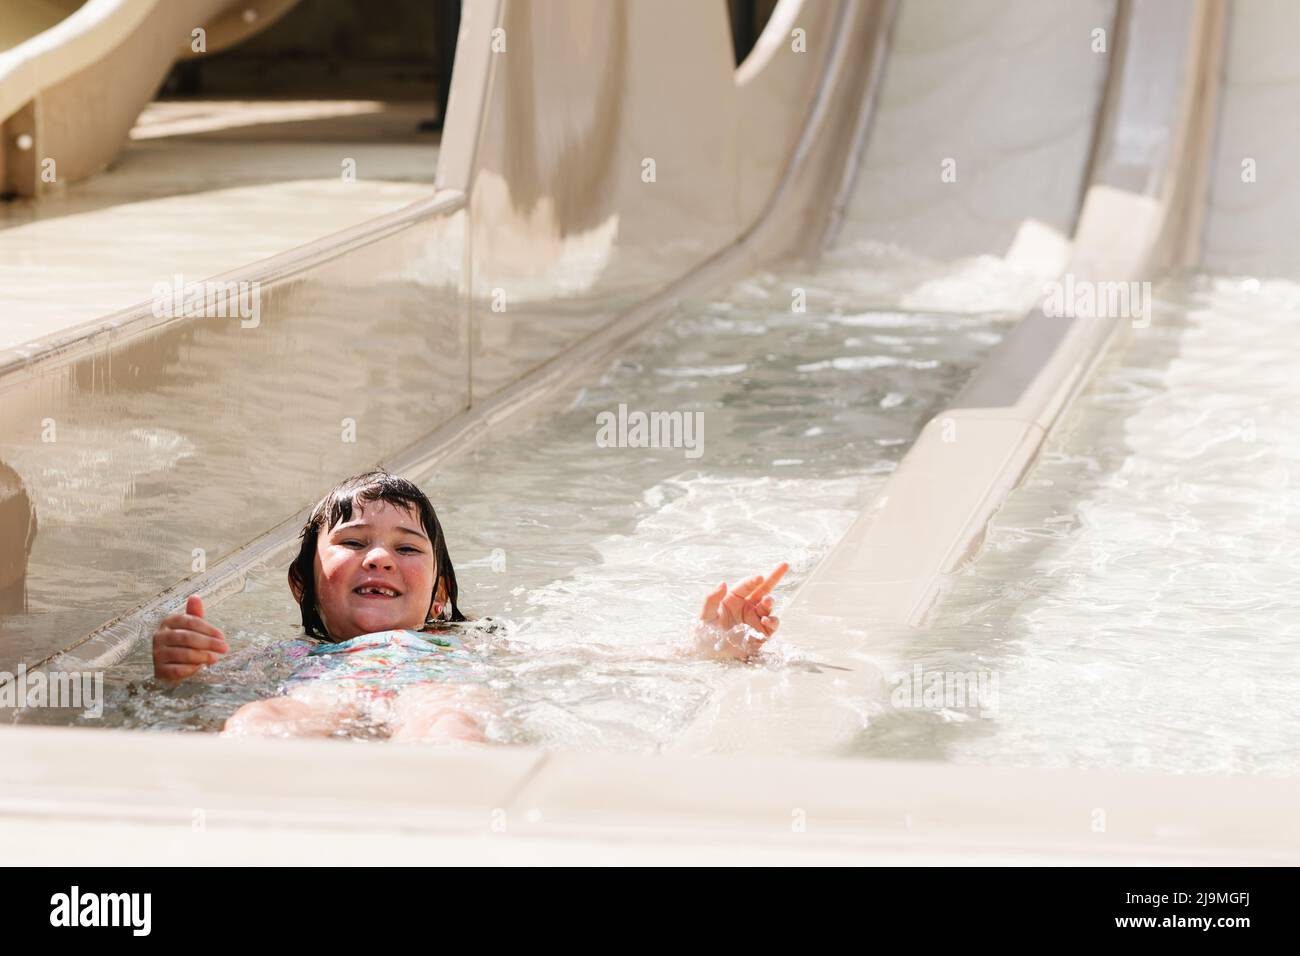 Von oben kleines Mädchen mit nassem dunklen Haar, das auf einer Wasserrutsche reitet, während es einen sonnigen Sommertag im Wasserpark verbringt Stockfoto